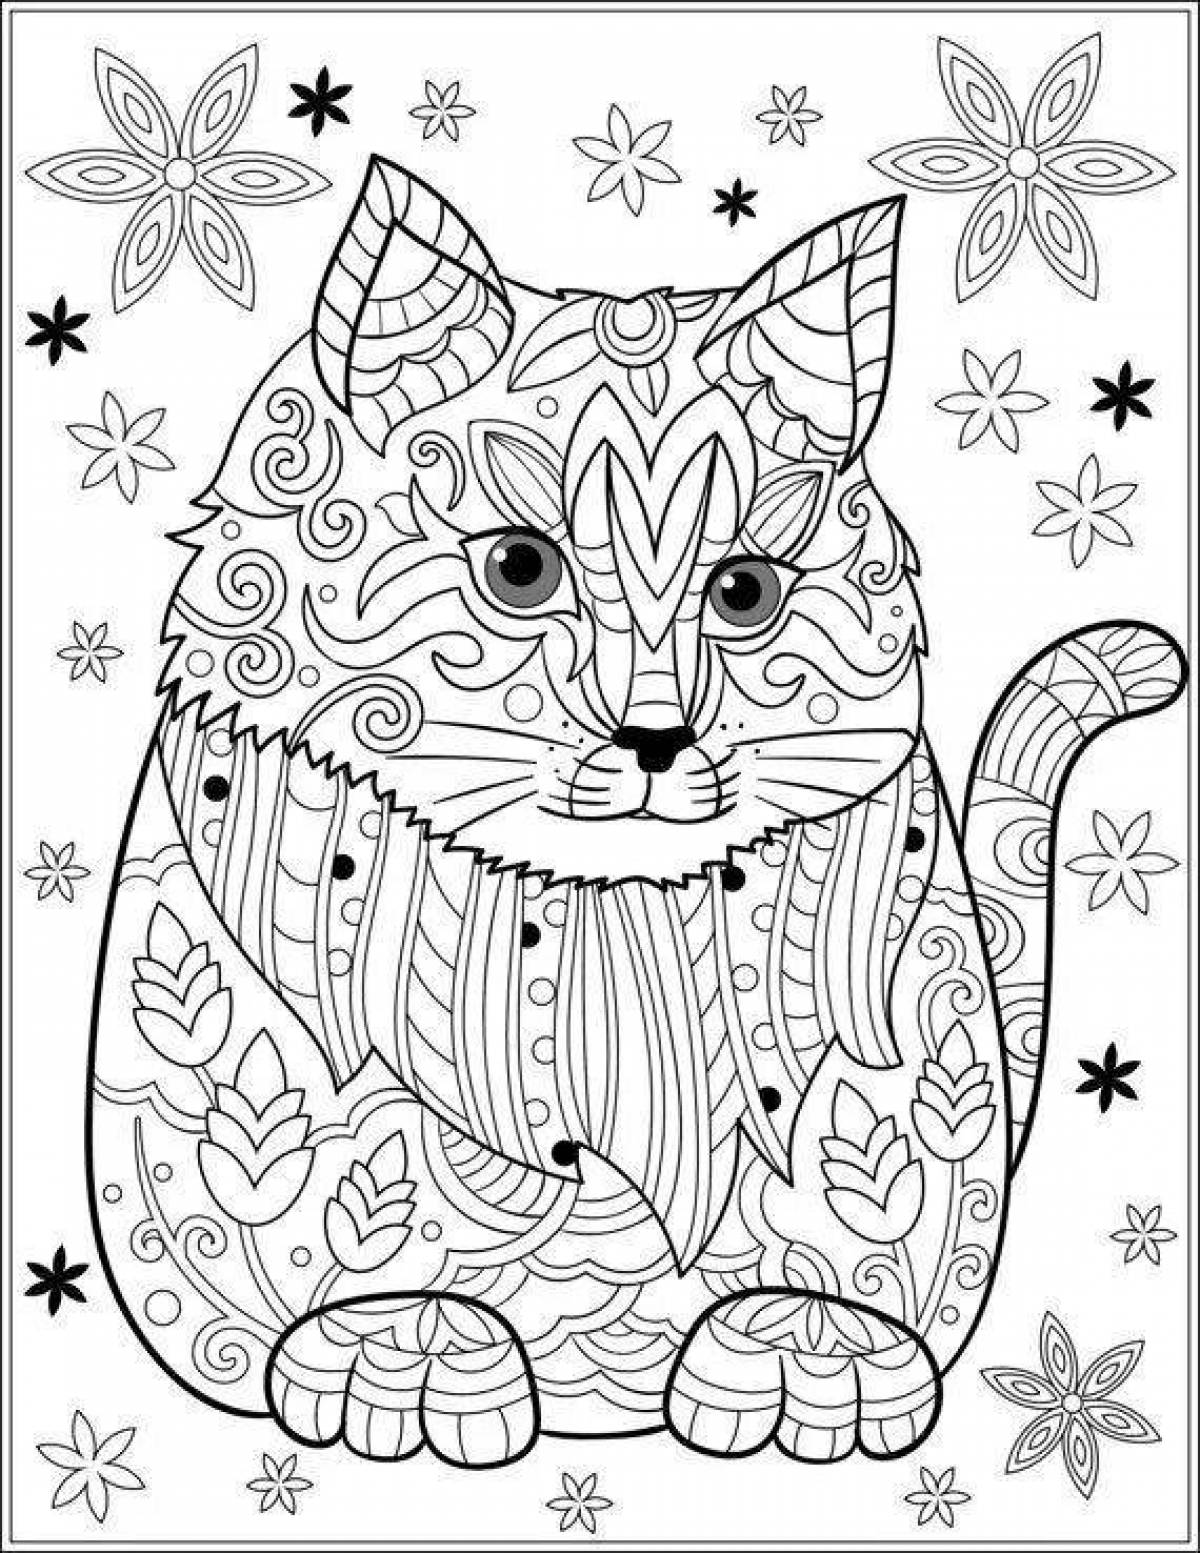 Буйная раскраска для девочек 12 лет - кошки